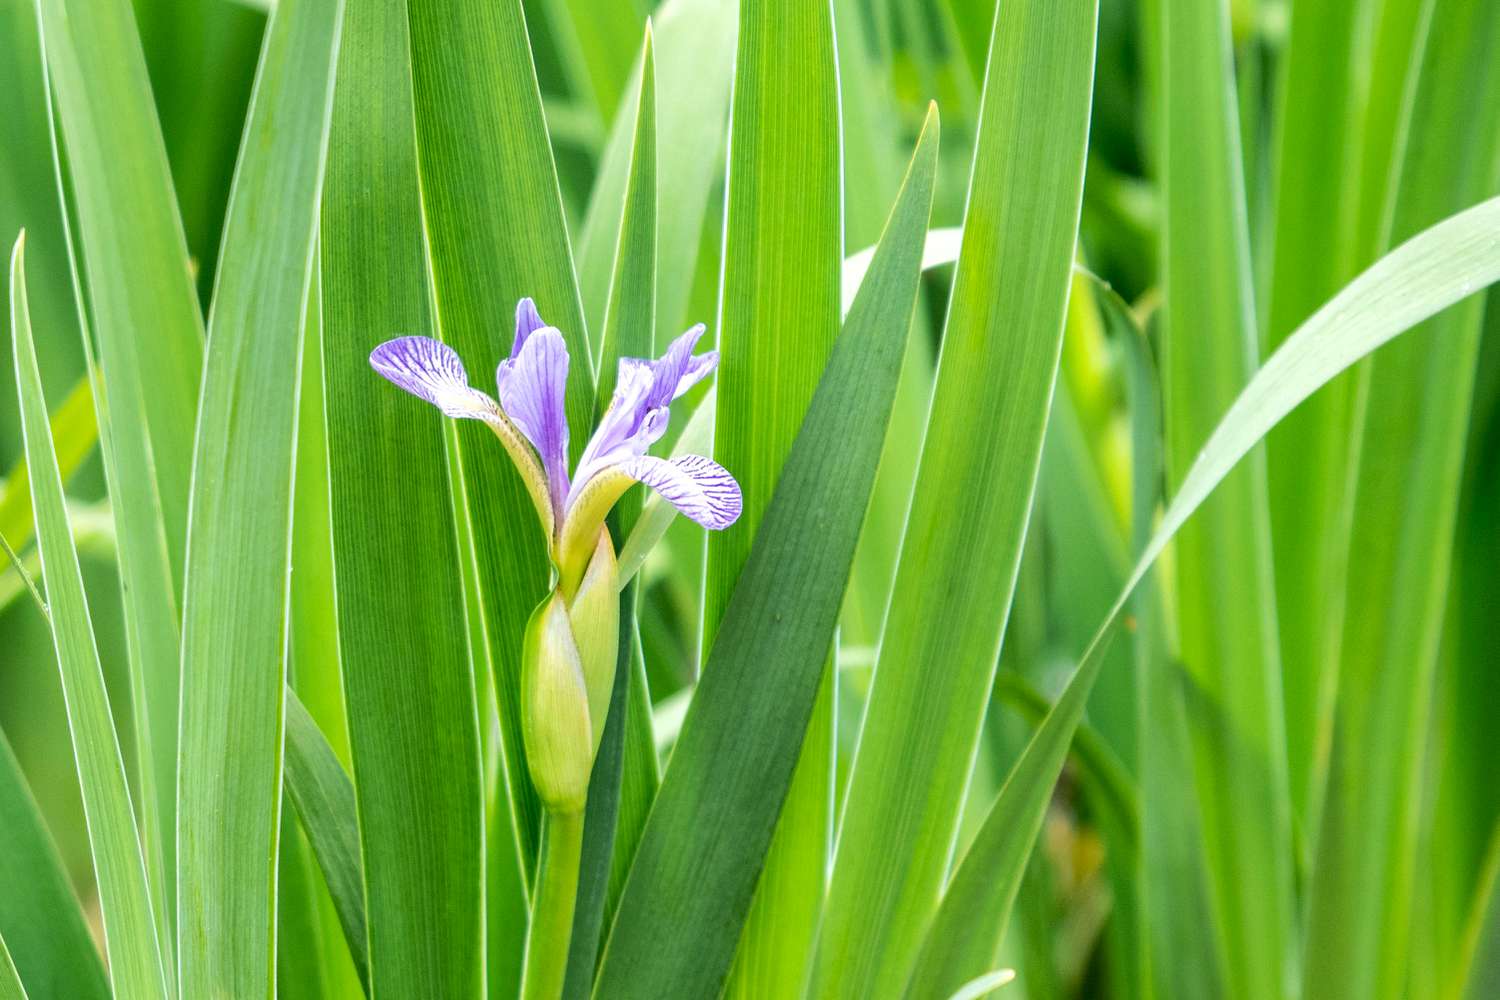 Nördliche blaue Fahnenpflanze mit violett gestreiften Blüten, umgeben von schwertartigen Blättern